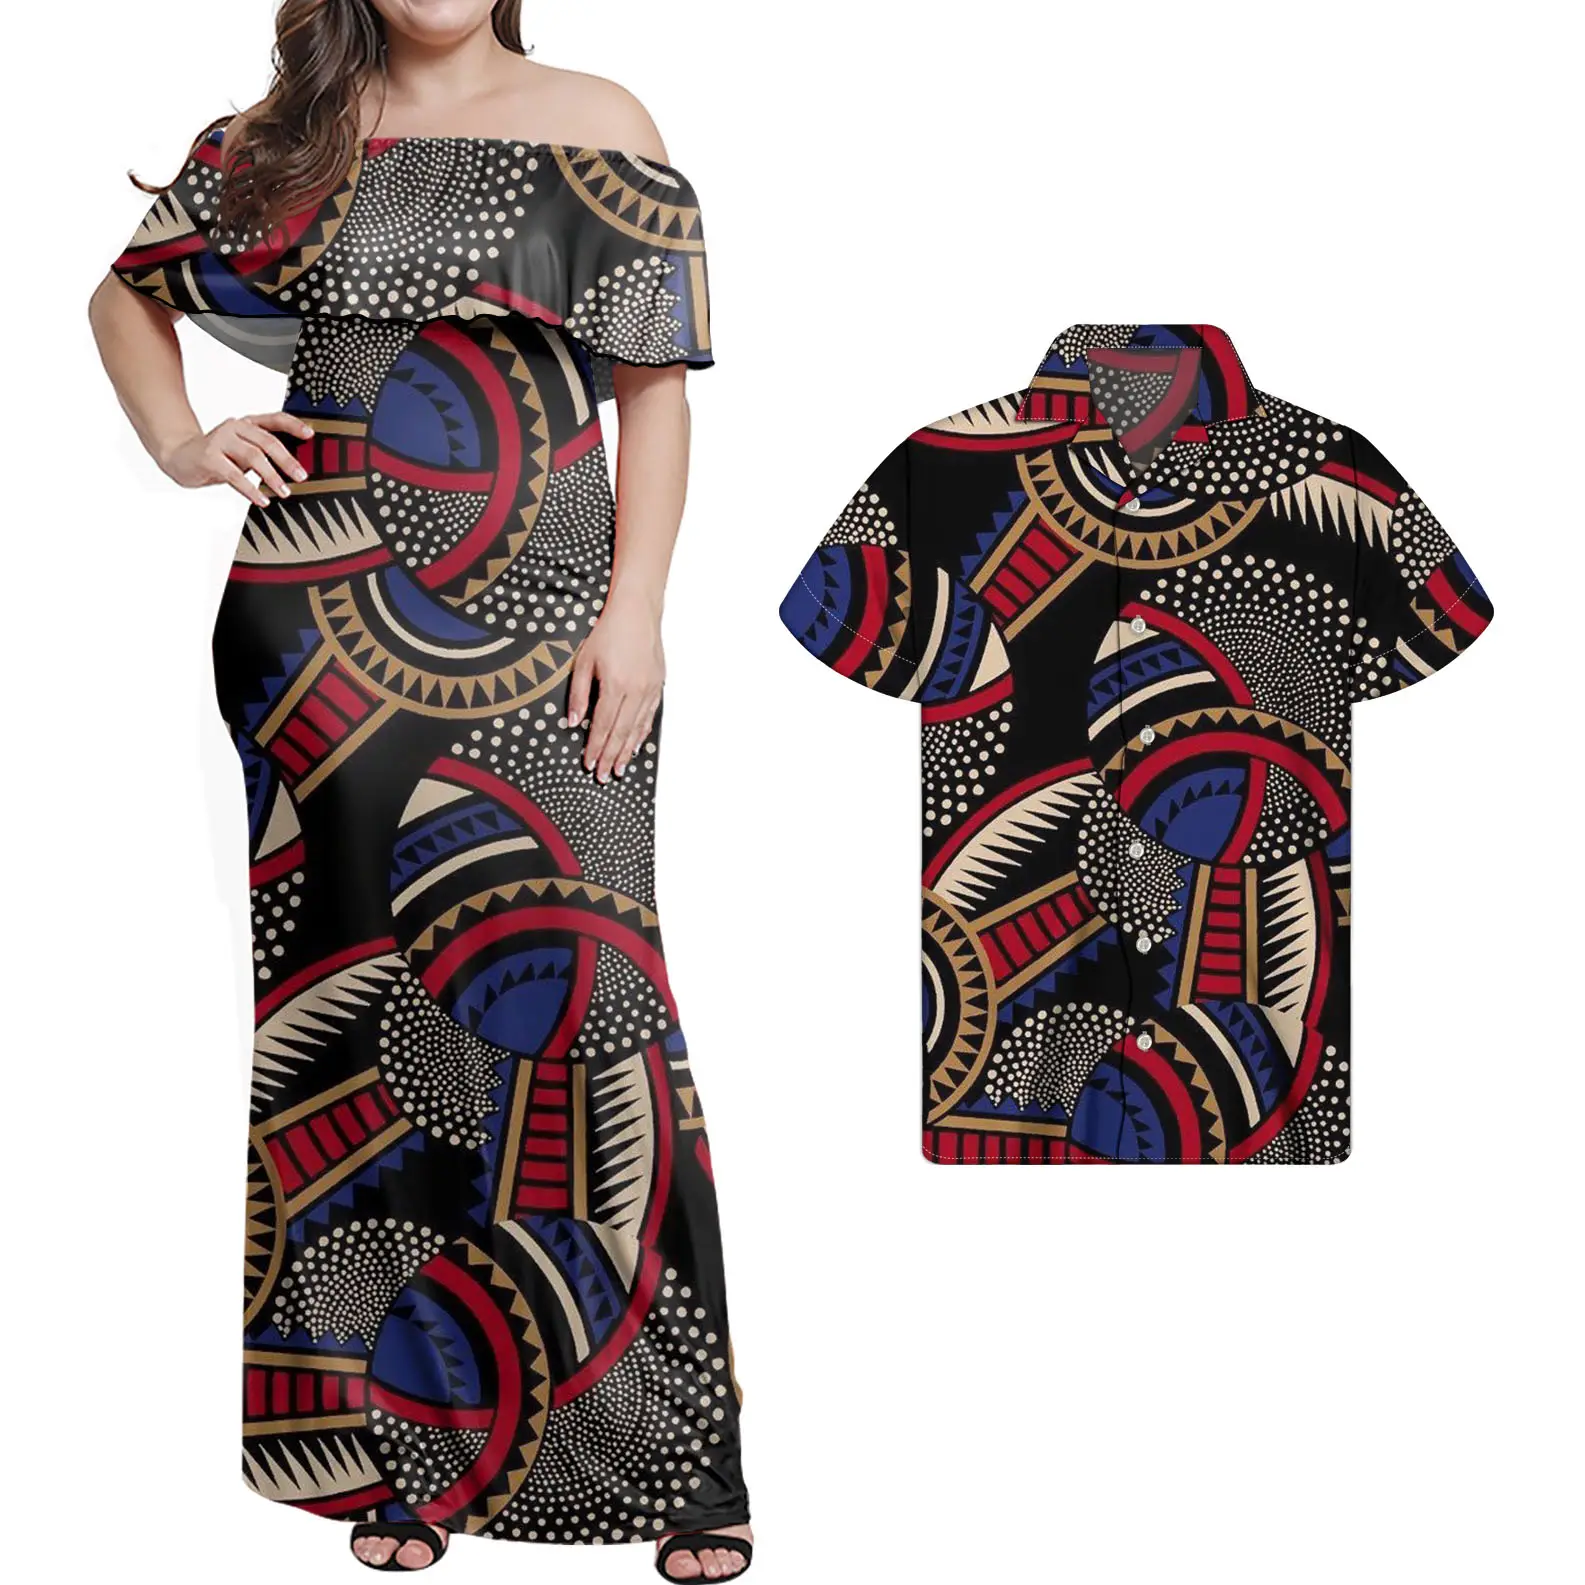 فستان رجالي أفريقي بشمع مقاسات كبيرة, بيع عبر سلسلة التجزئة ، أثواب رجالي أفريقية ماركة (Dashiki) مصنوعة من الشمع تلائم المقاسات الكبيرة ، للبيع بالجملة